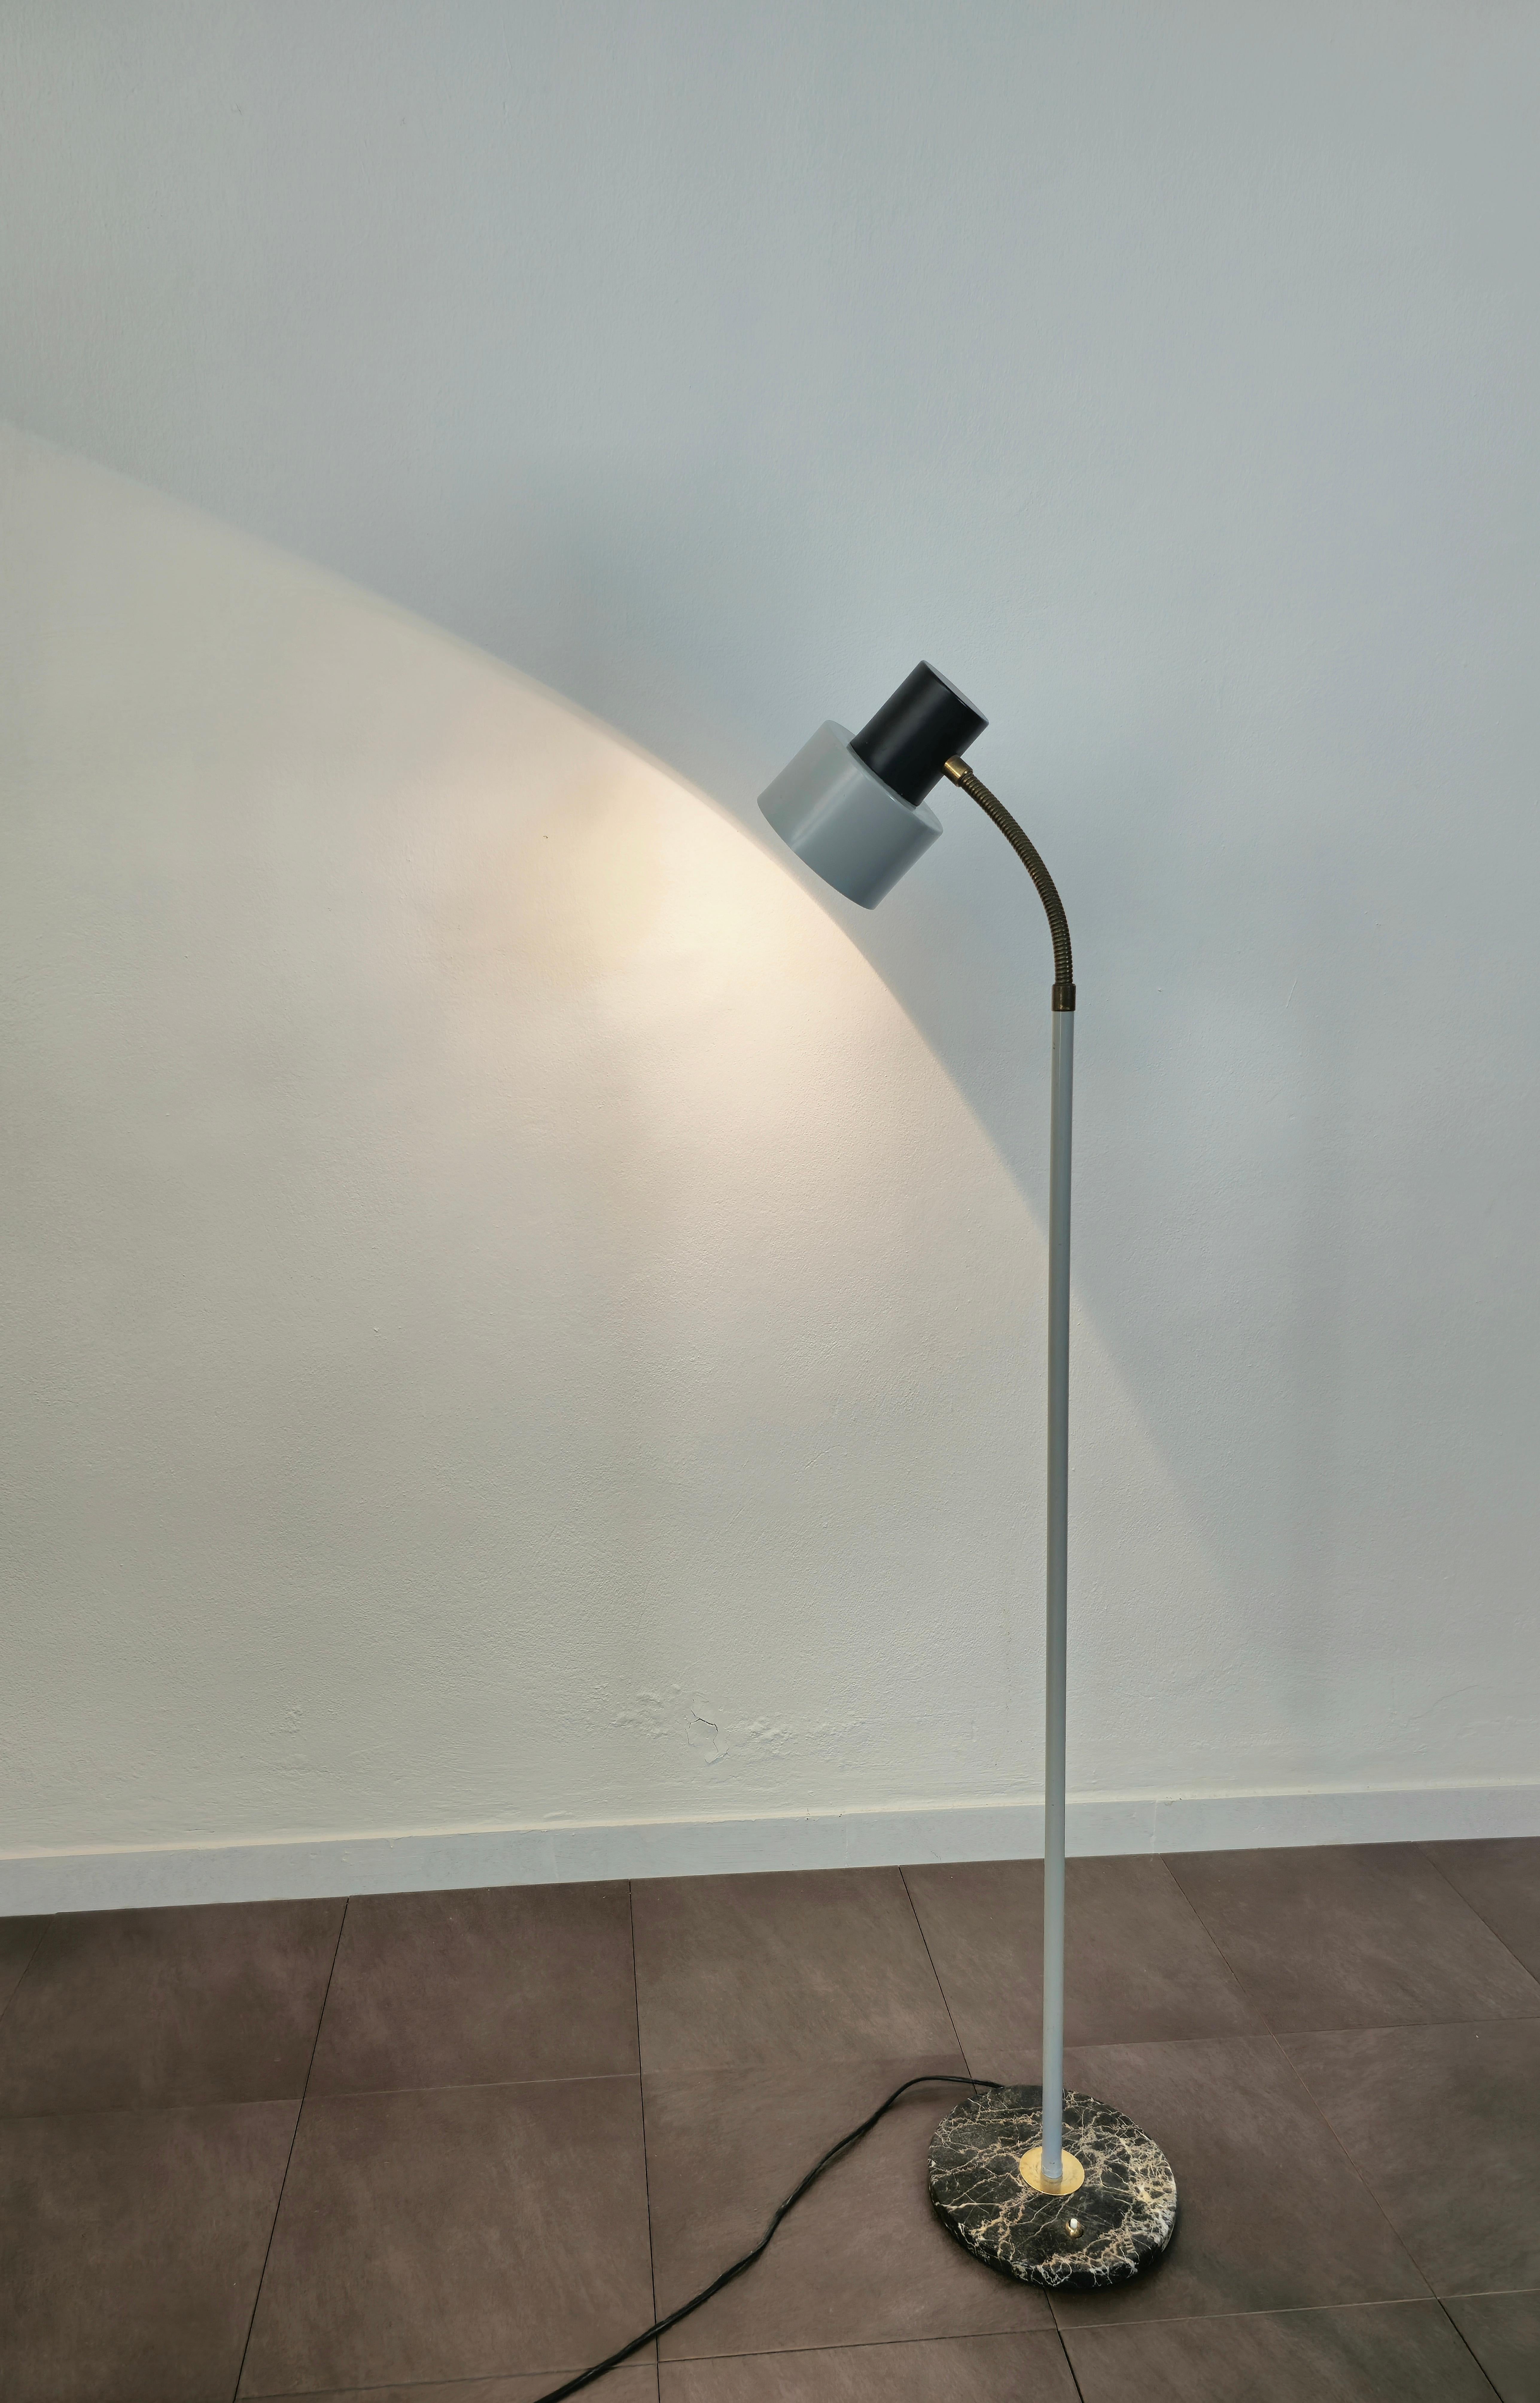 Lampadaire attribué à Stilux et produit en Italie dans les années 1950/60.
La lampe a été fabriquée avec une base circulaire en marbre avec interrupteur, une tige en métal émaillé gris et un diffuseur en aluminium émaillé noir et gris qui peut être